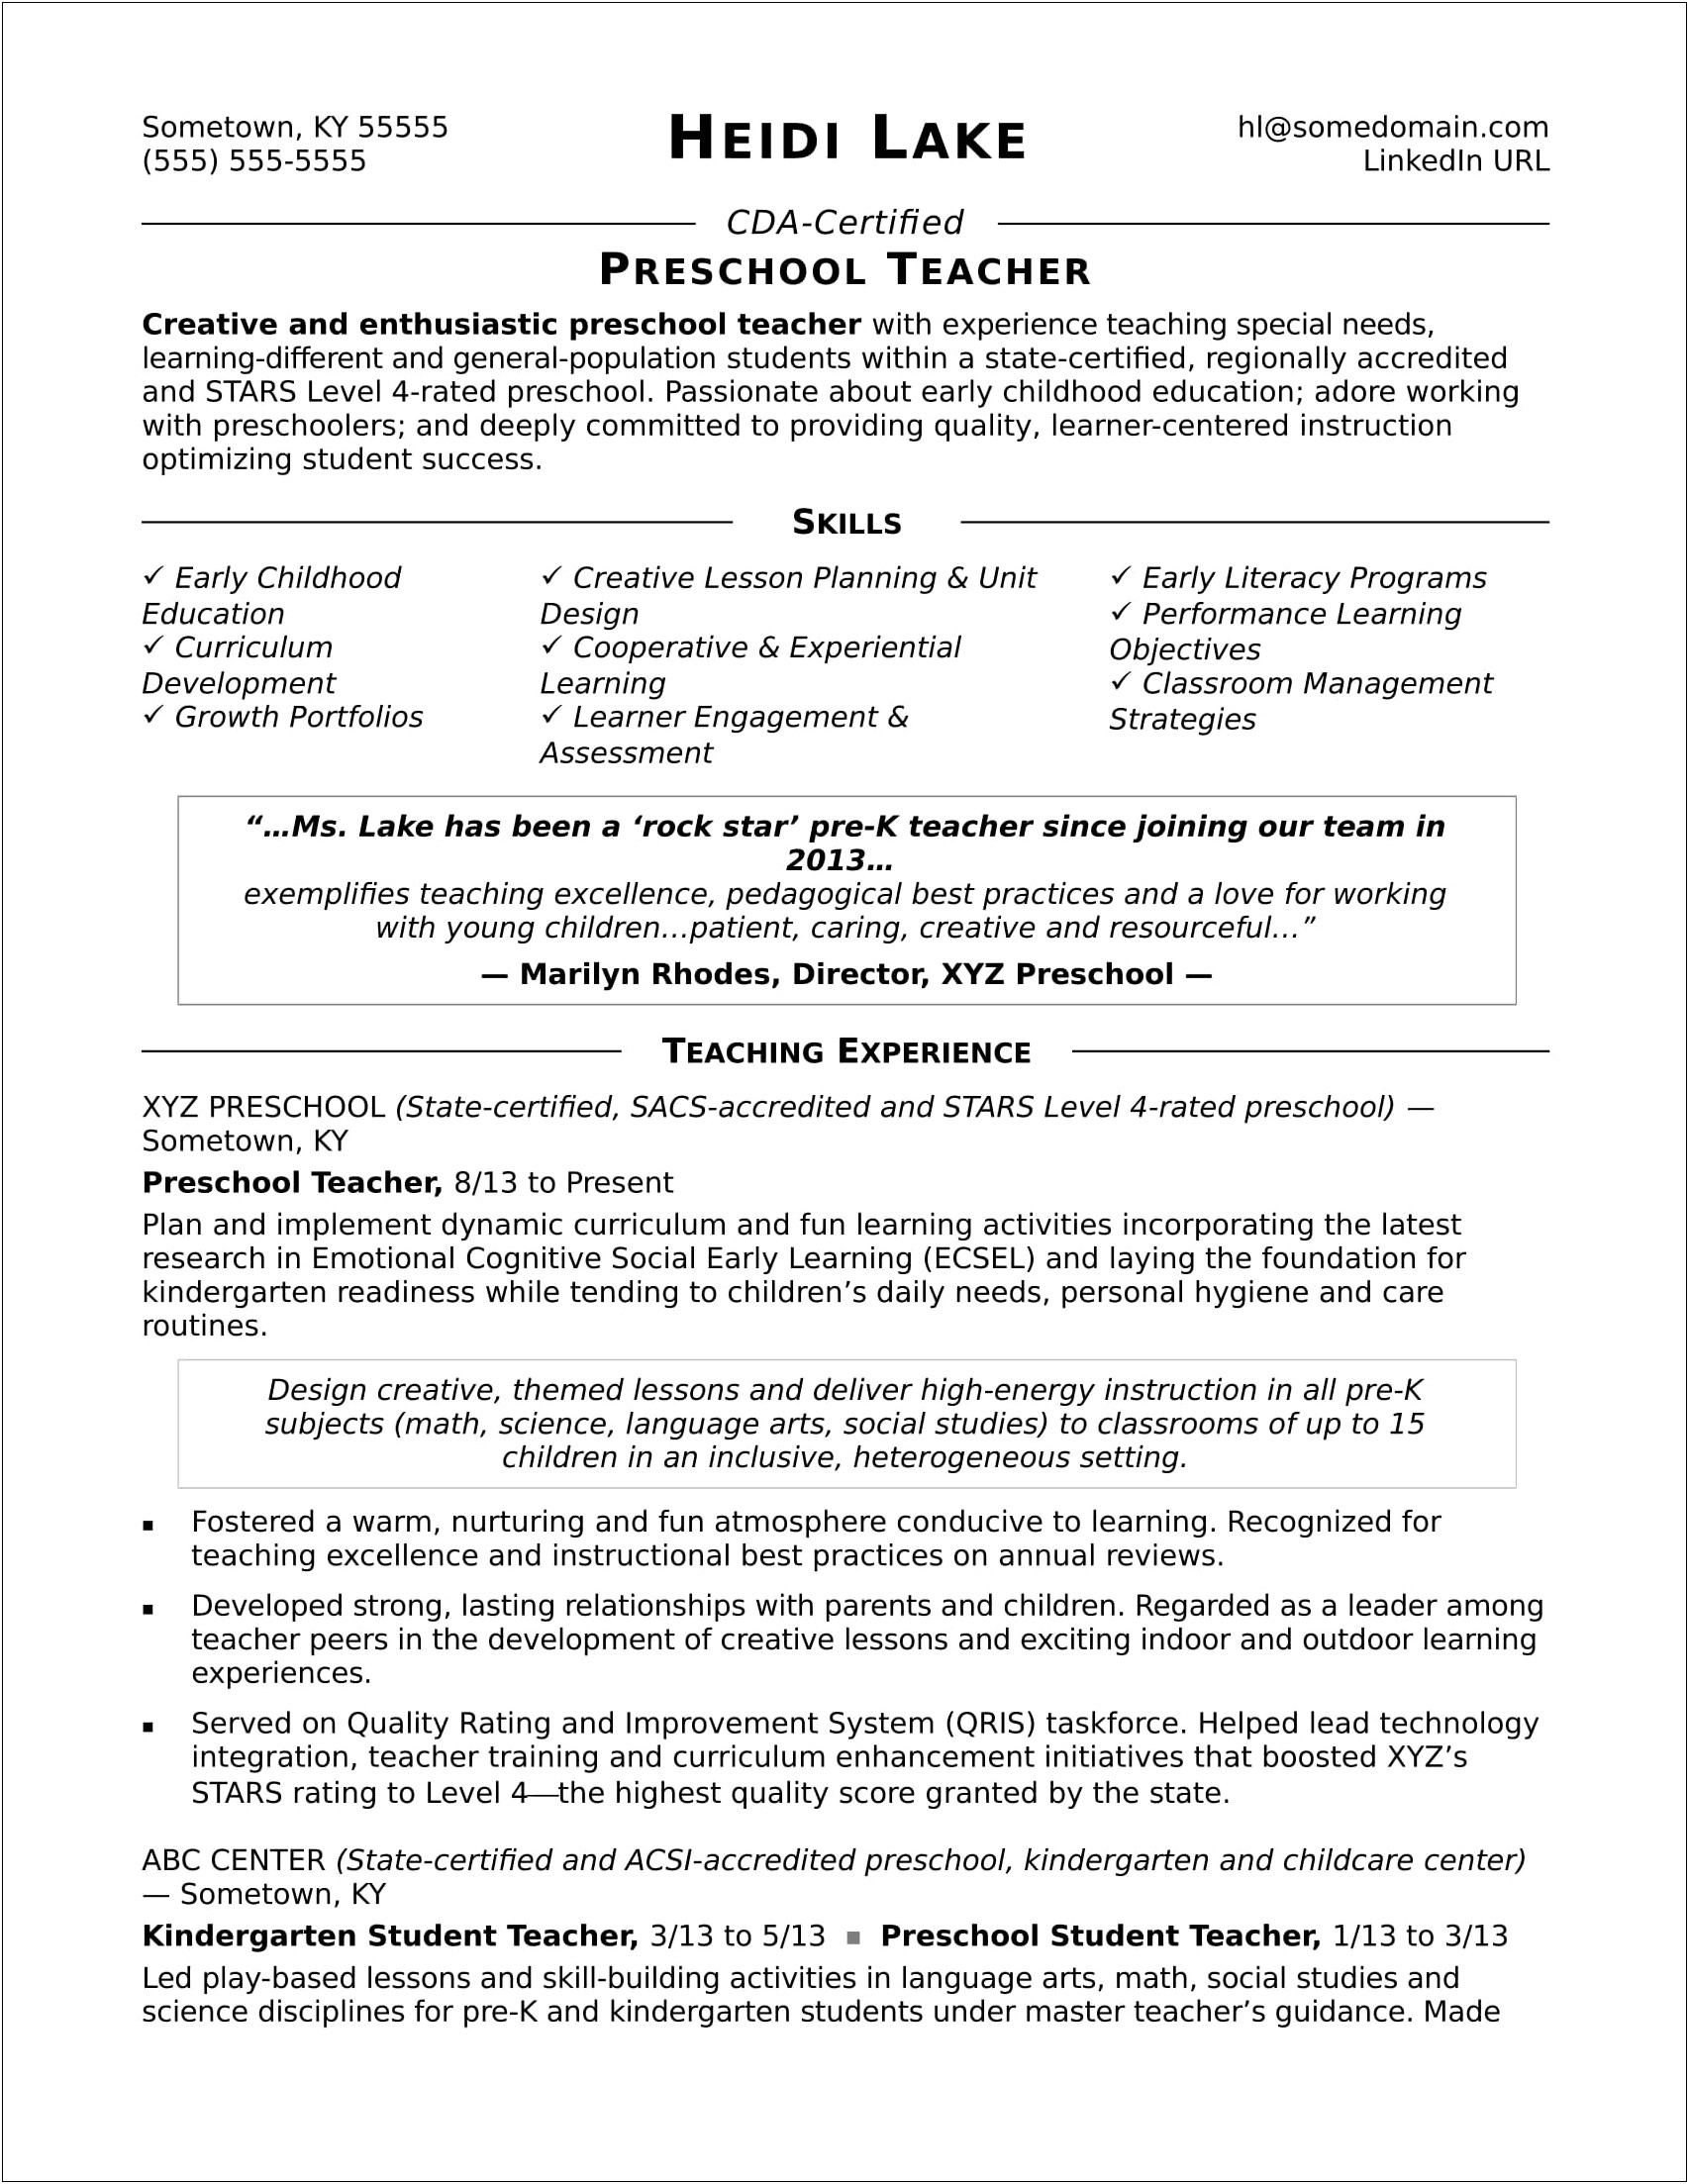 Free Sample Resume For Elementary Teachers